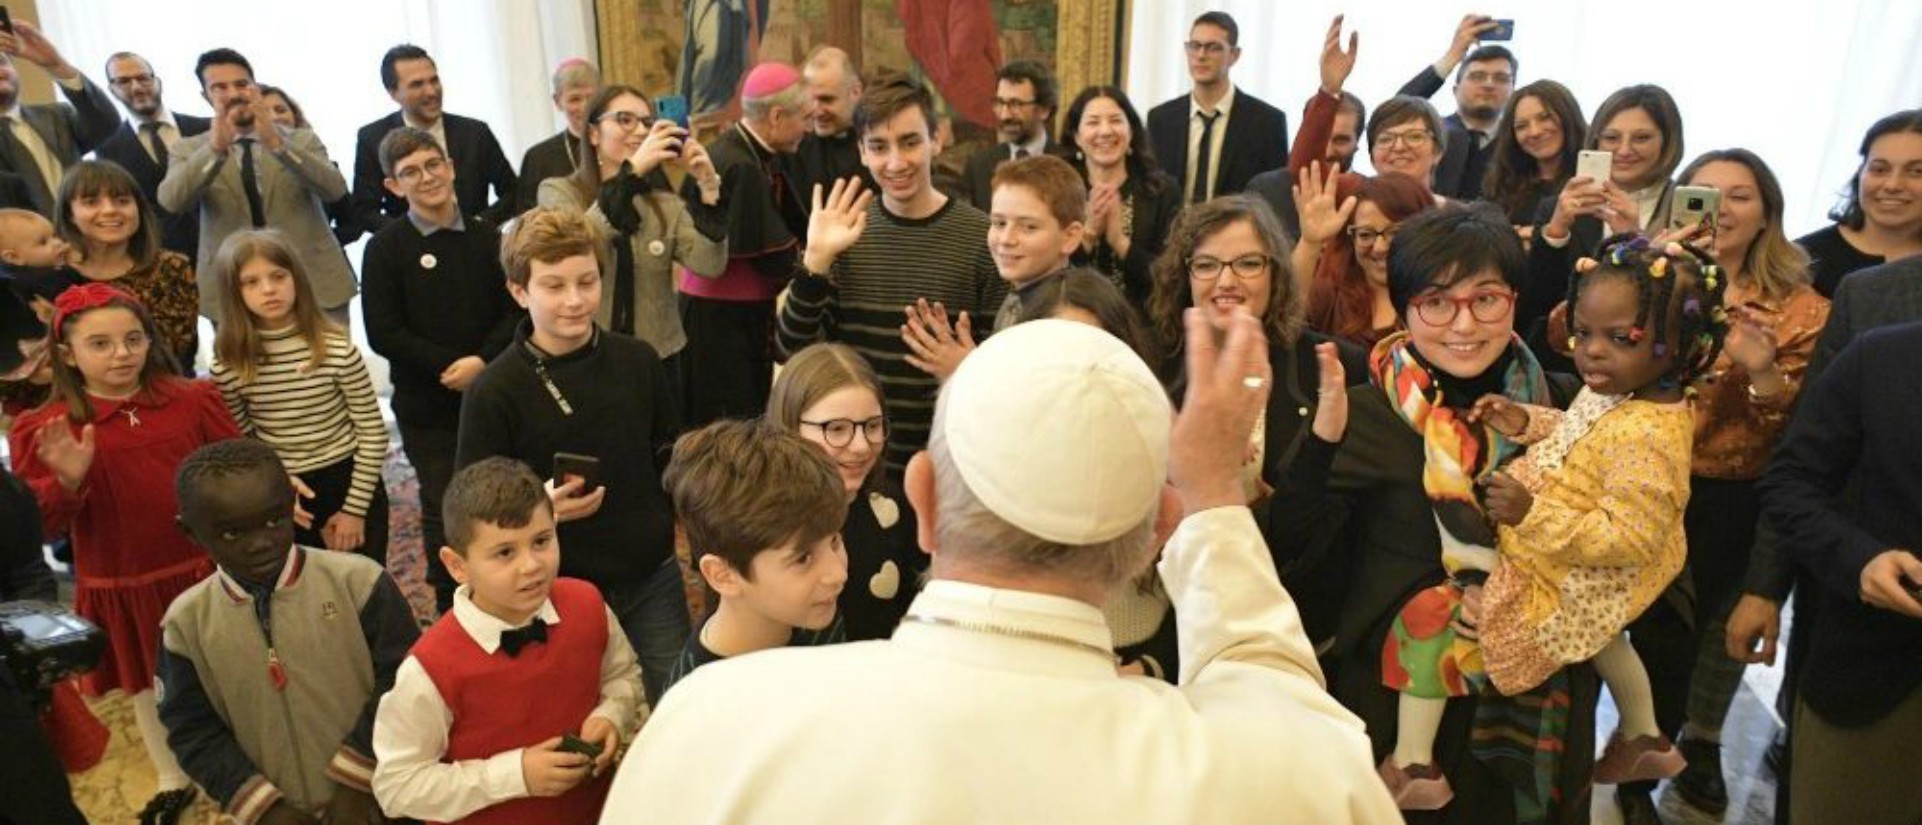 Le pape François a reçu le 16 décembre 2019 une soixantaine de jeunes membres de l’Action catholique italienne | © Vatican Media